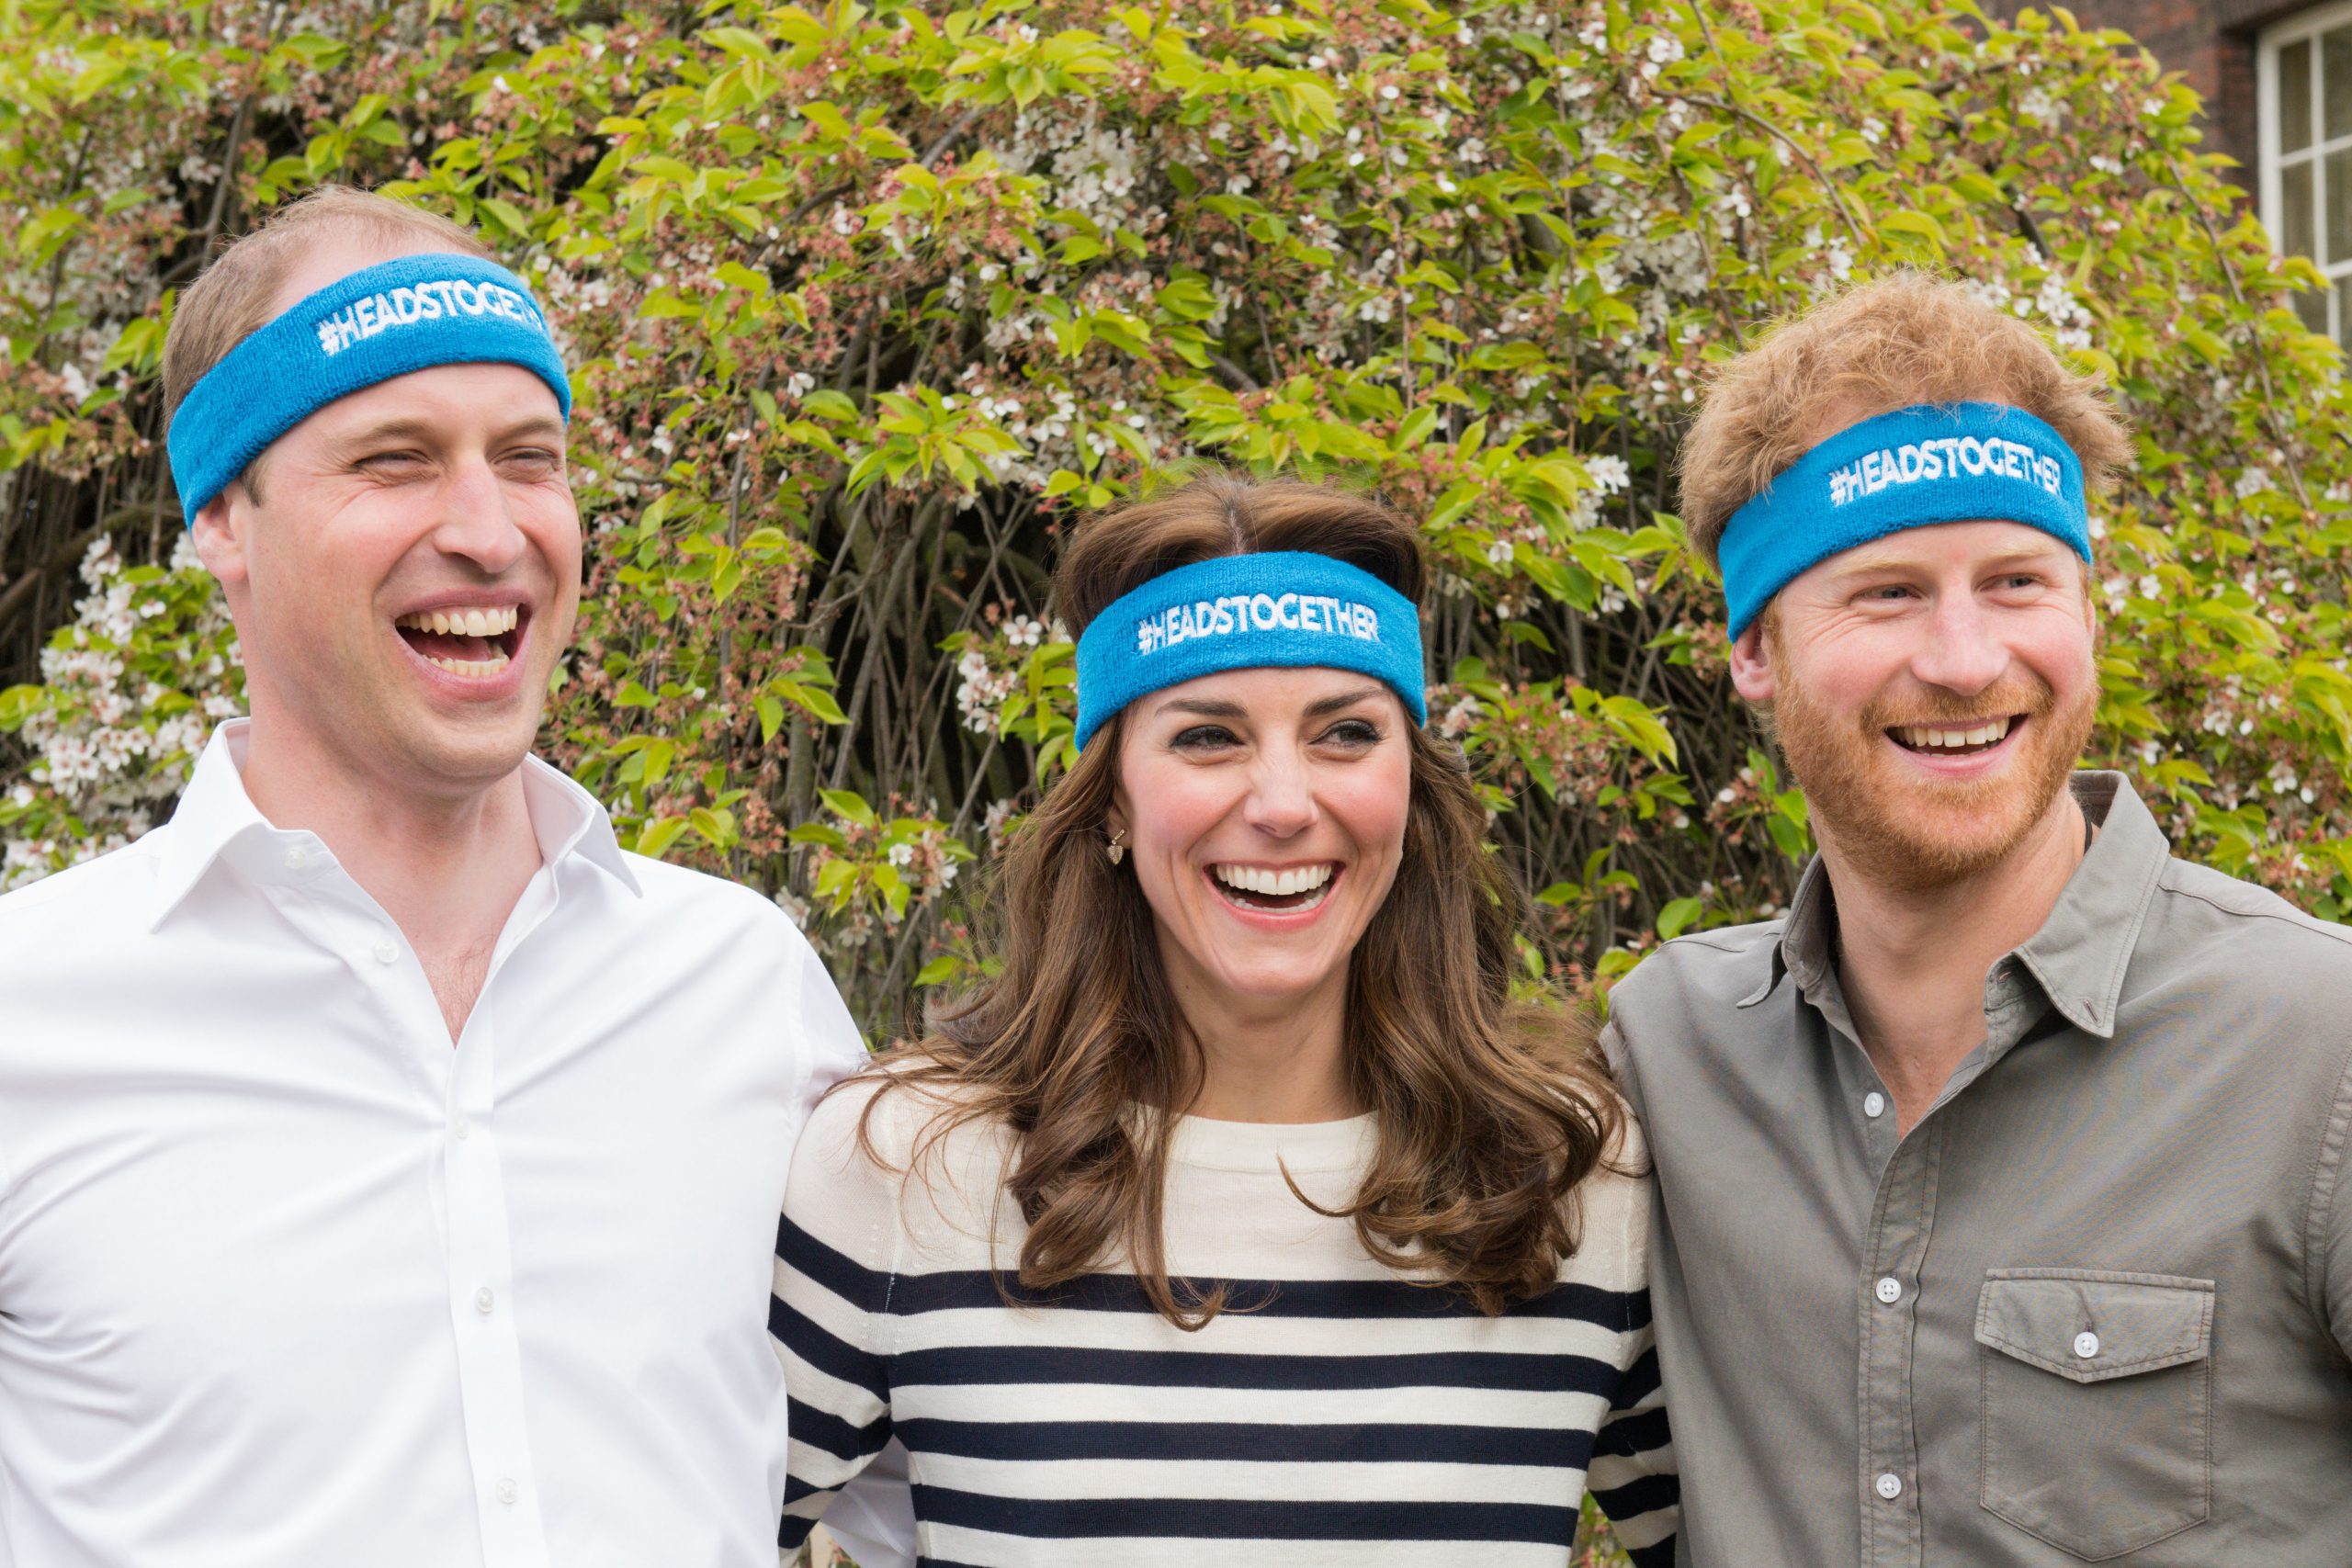 Printii William și Harry și Kate Middleton, campania Heads Together, 2017. Toți 3 poartă bentițe albastre cu logo-ul campaniei